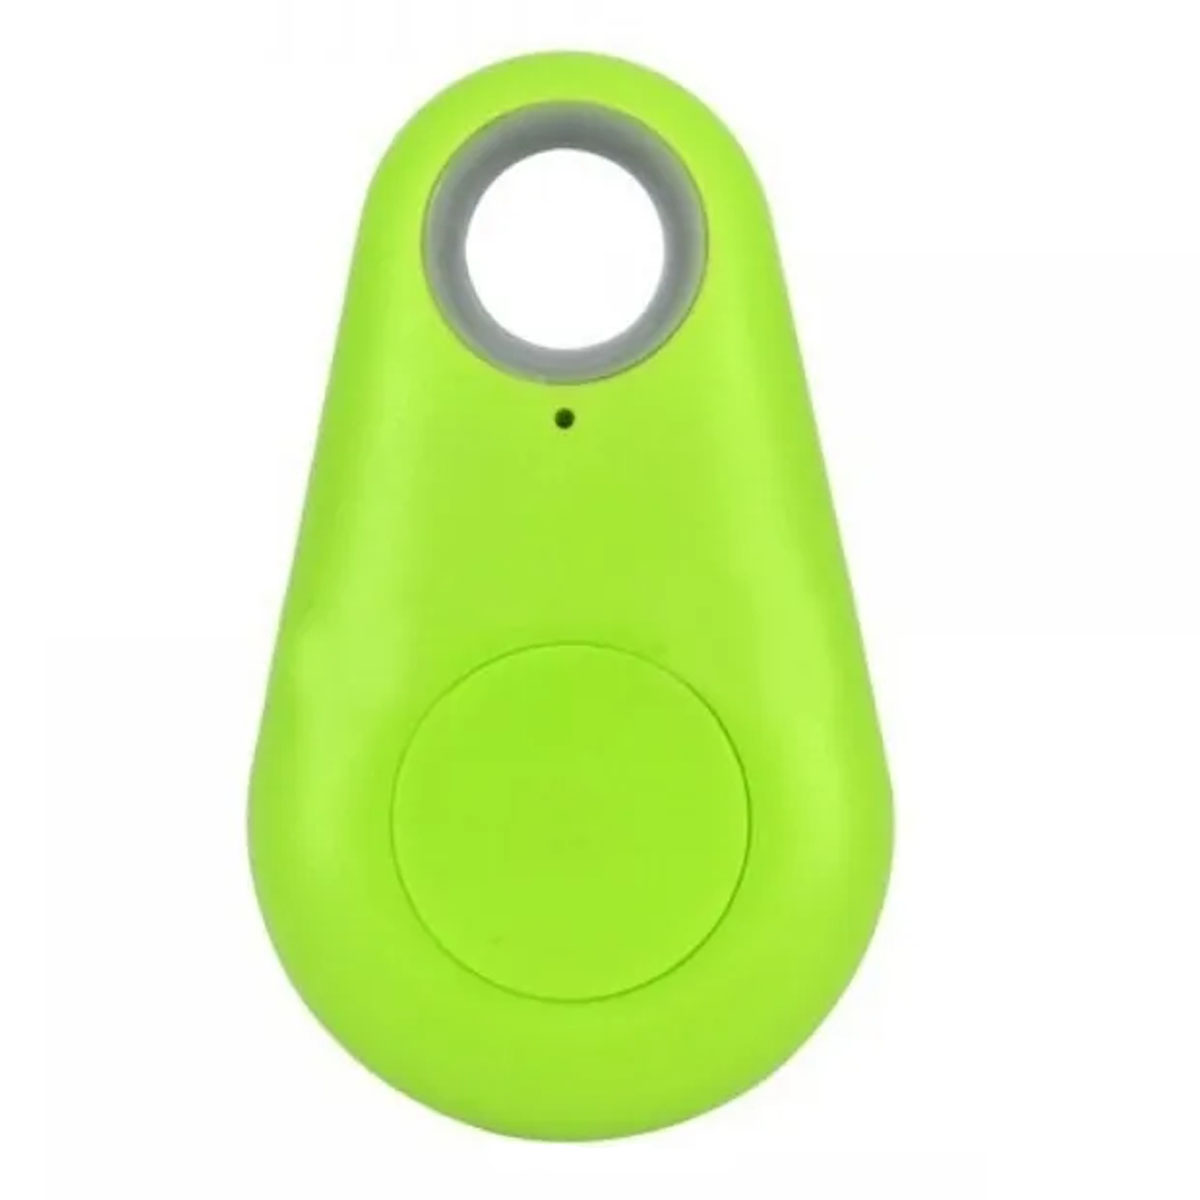 Метка брелок локатор iTag антипотеряшка bluetooth для поиска ключей, телефона, цвет зеленый